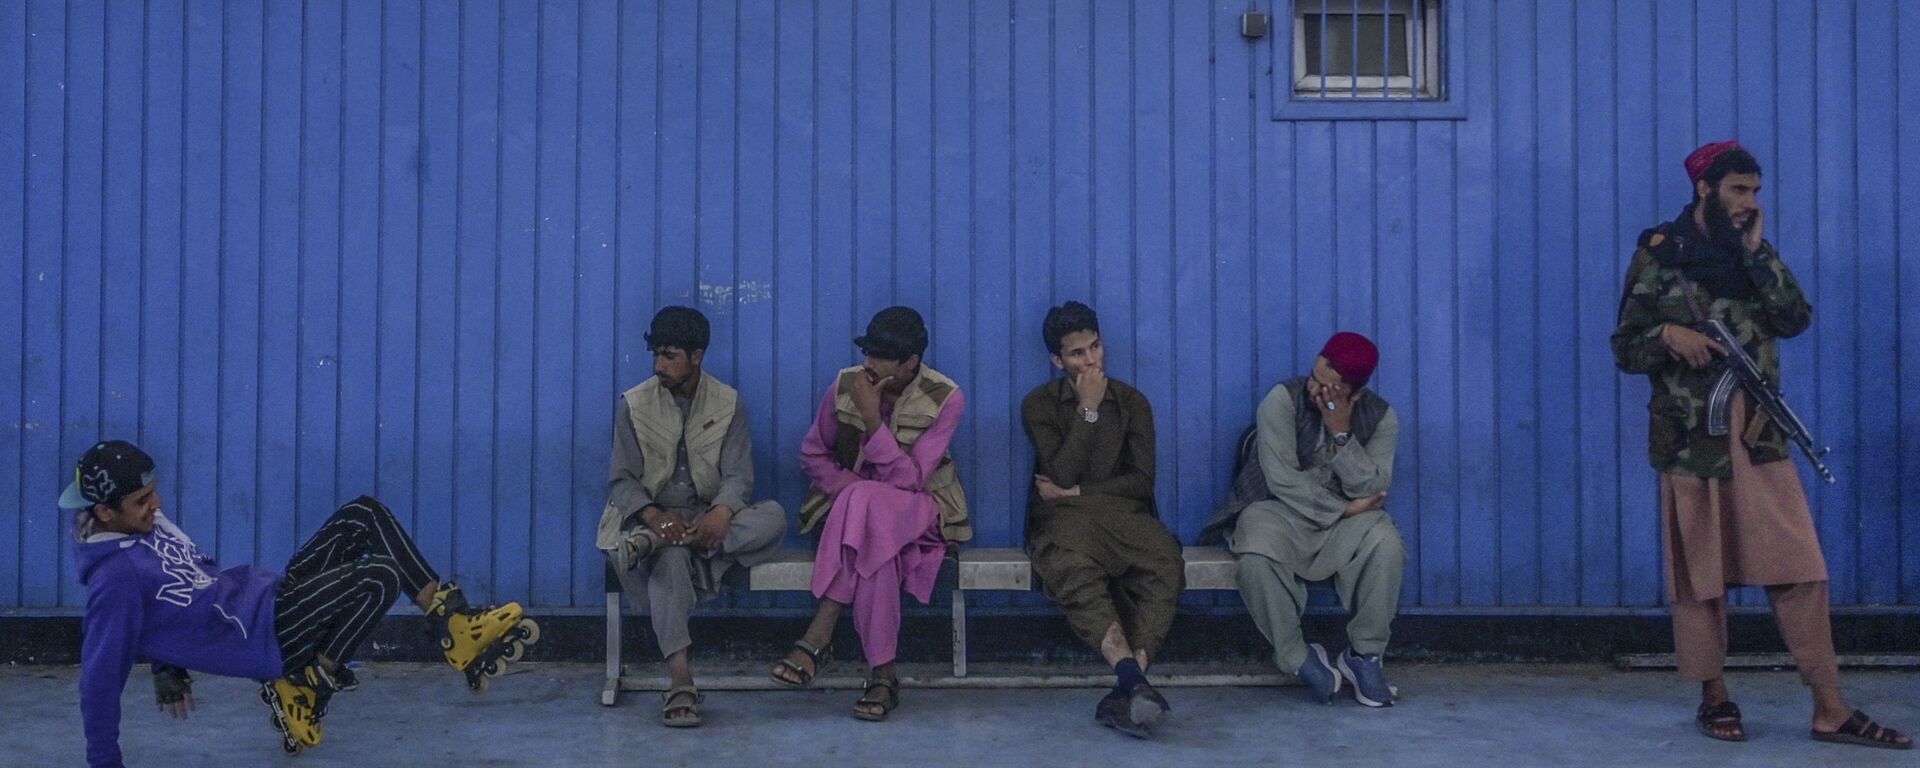 Во время визита директора Талибана по физическому воспитанию и спорту Башира Ахмада Рустамзая в спортзал в Кабуле - Sputnik Ўзбекистон, 1920, 21.09.2021